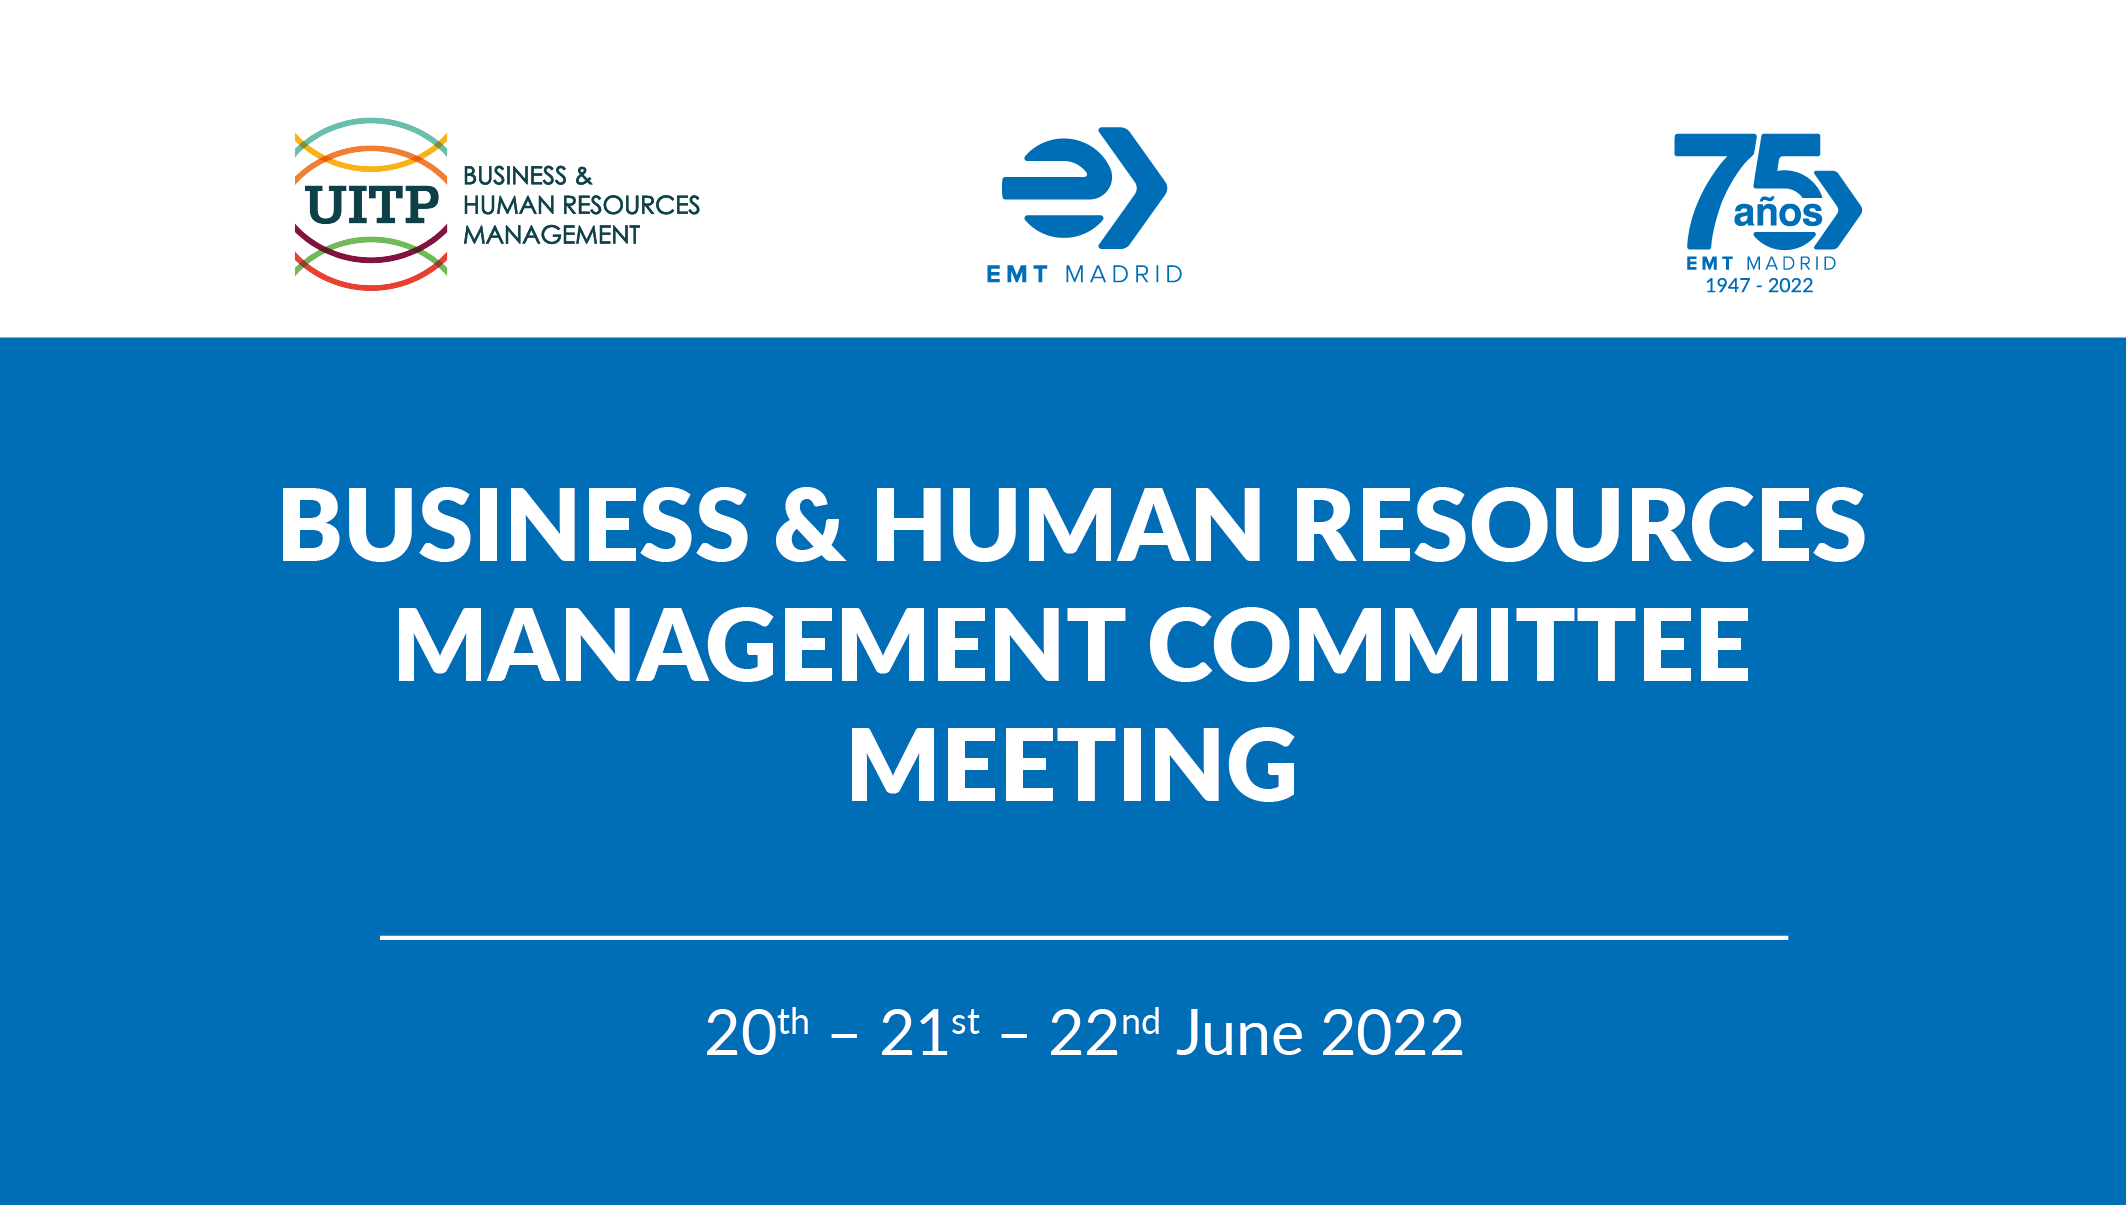 EMT acoge la reunión del Comité de Recursos Humanos y Gestión Empresarial de la UITP 